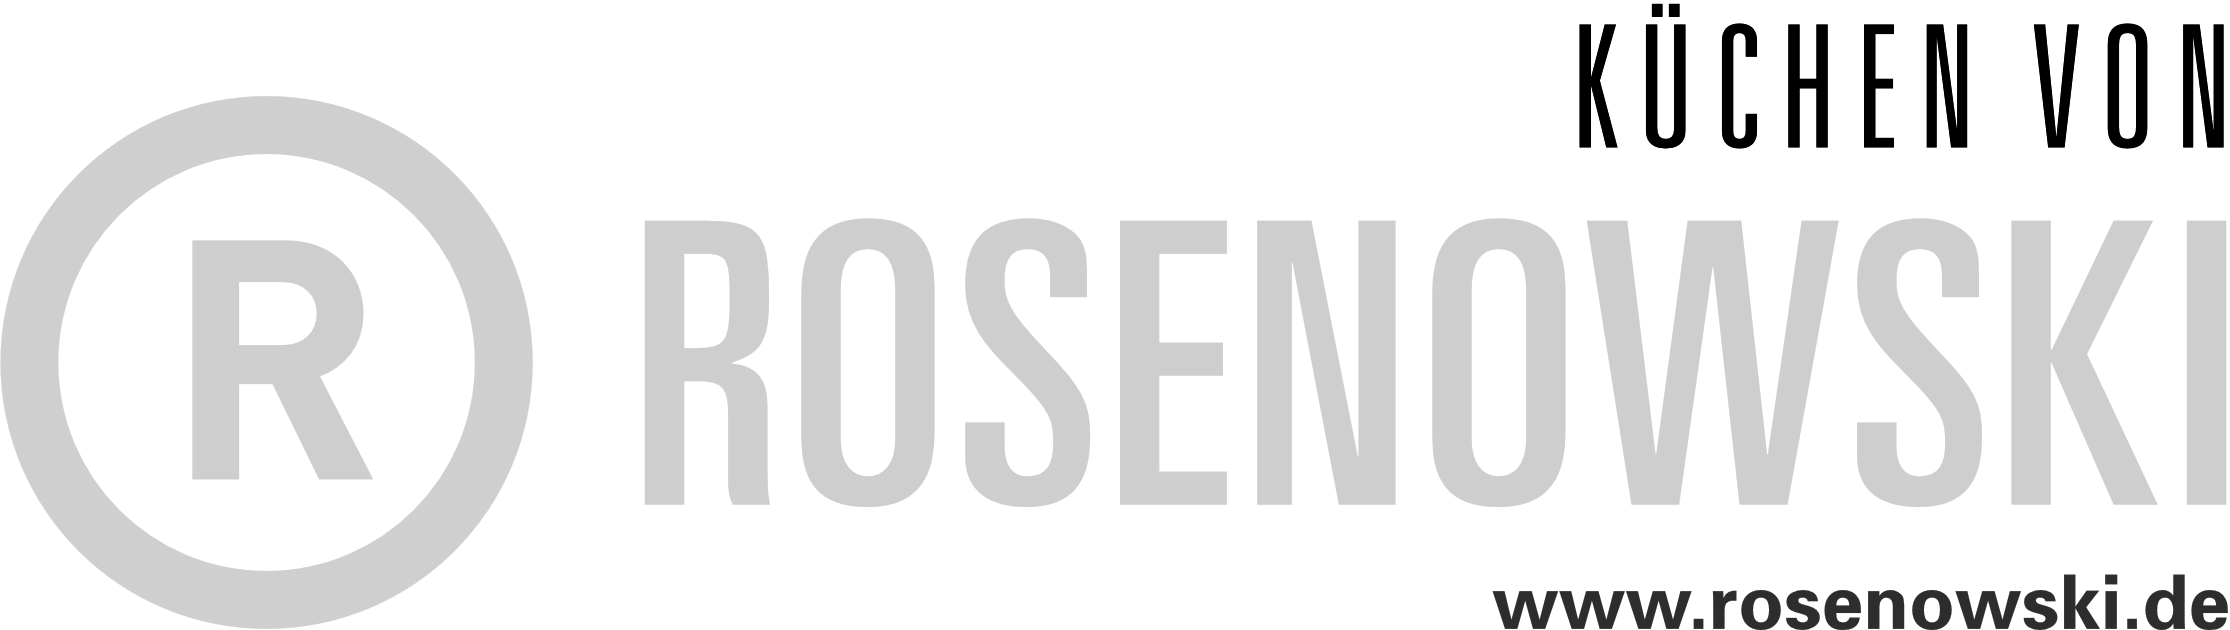 rosenowski_logo